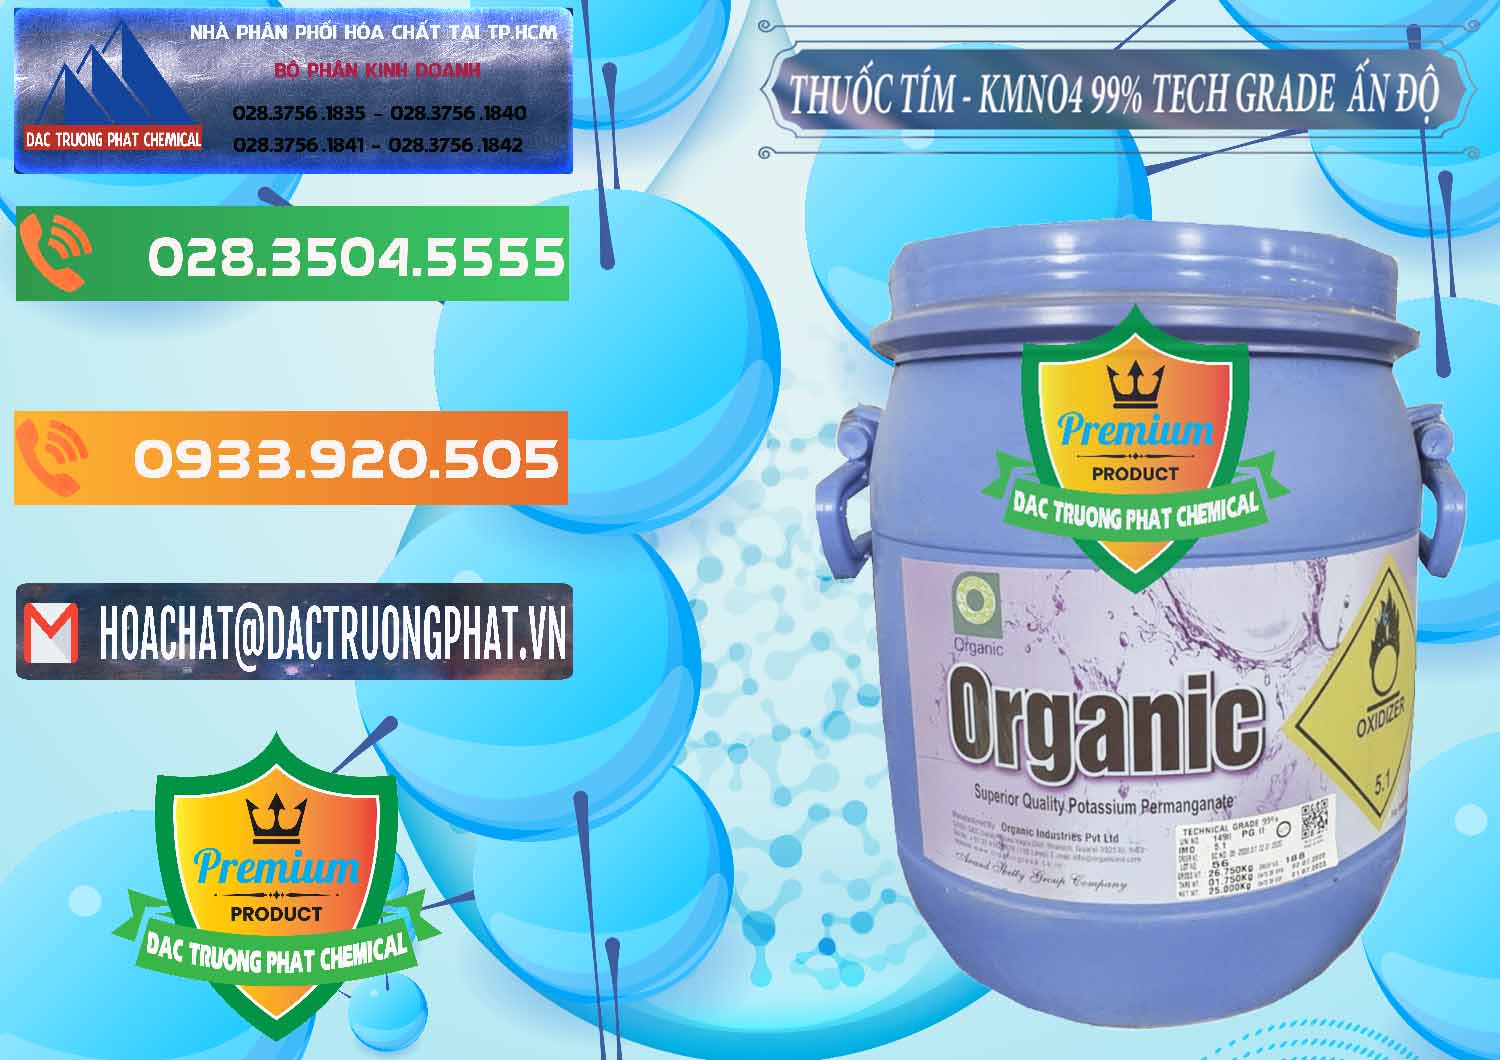 Cty chuyên bán - cung cấp Thuốc Tím - KMNO4 99% Organic Group Ấn Độ India - 0250 - Đơn vị phân phối & bán hóa chất tại TP.HCM - hoachatxulynuoc.com.vn